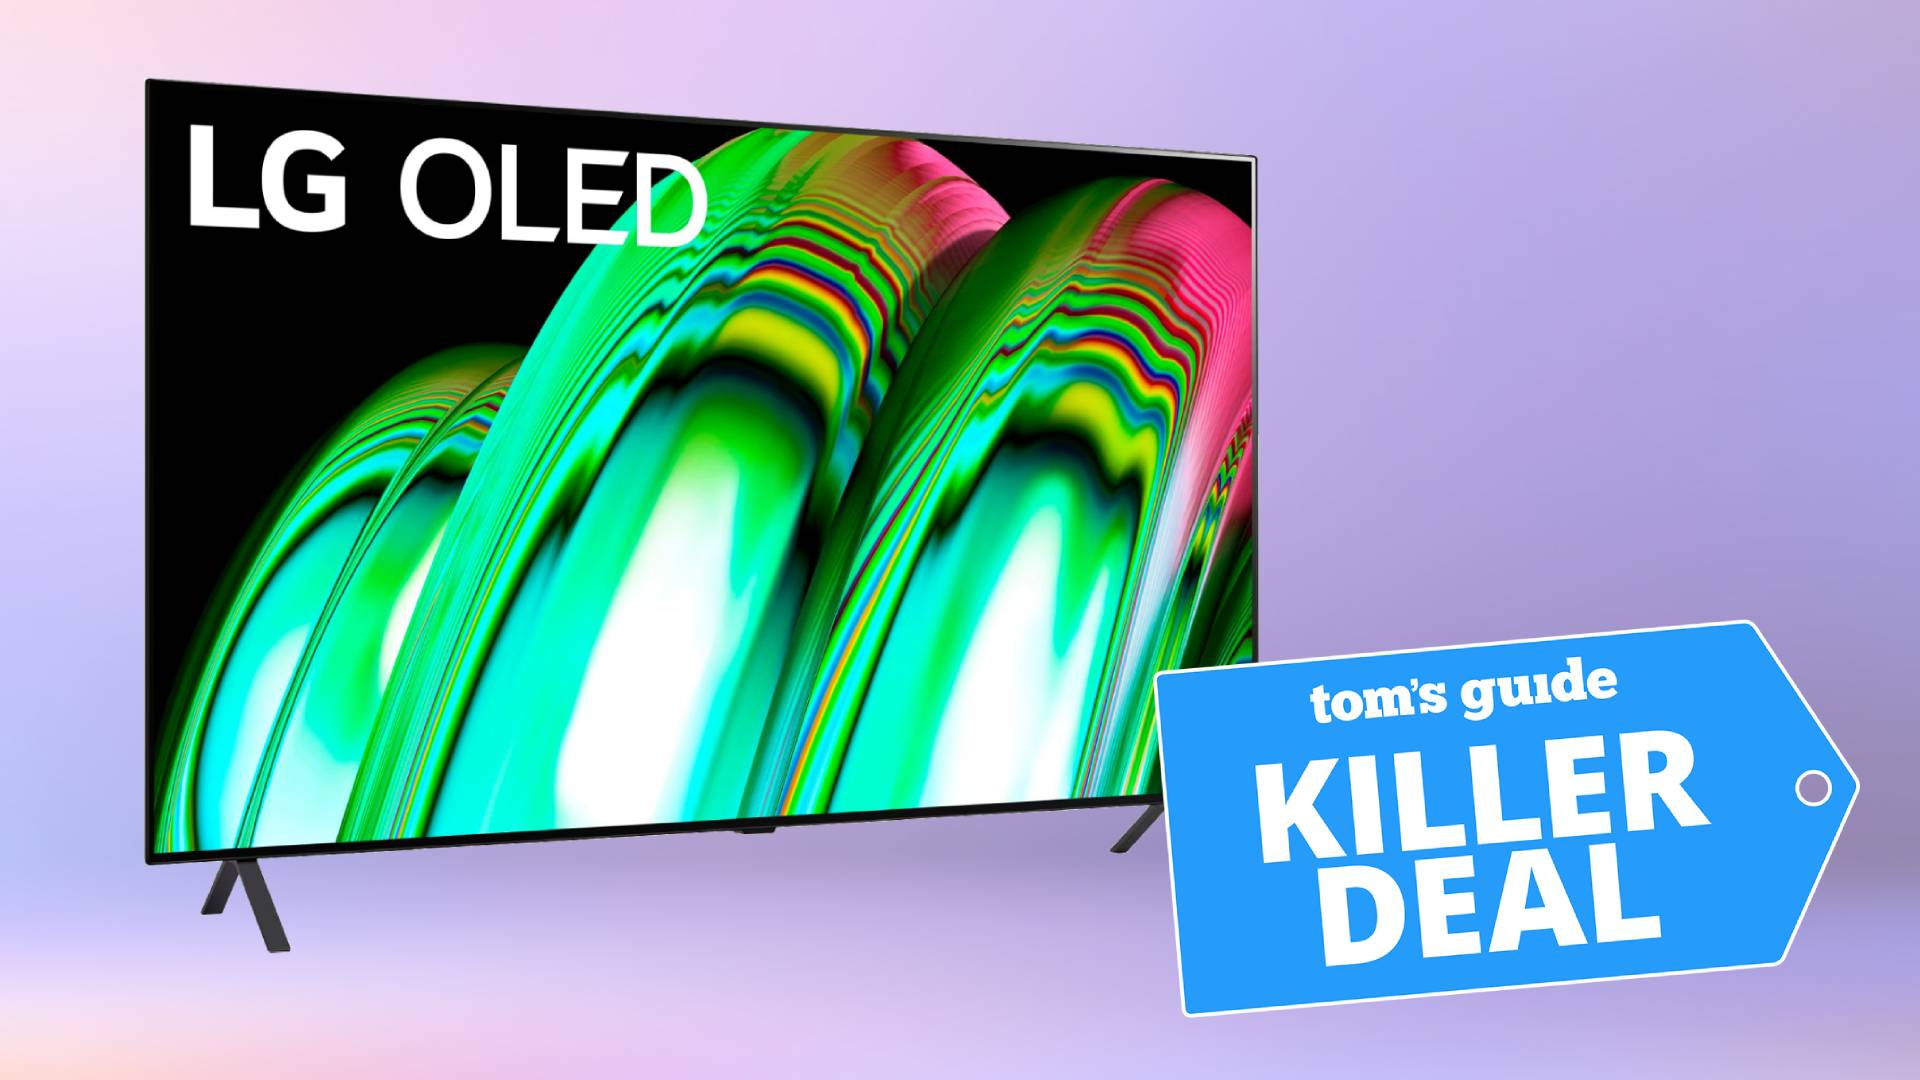 Portret telewizora LG A2 OLED 4K na fioletowym tle